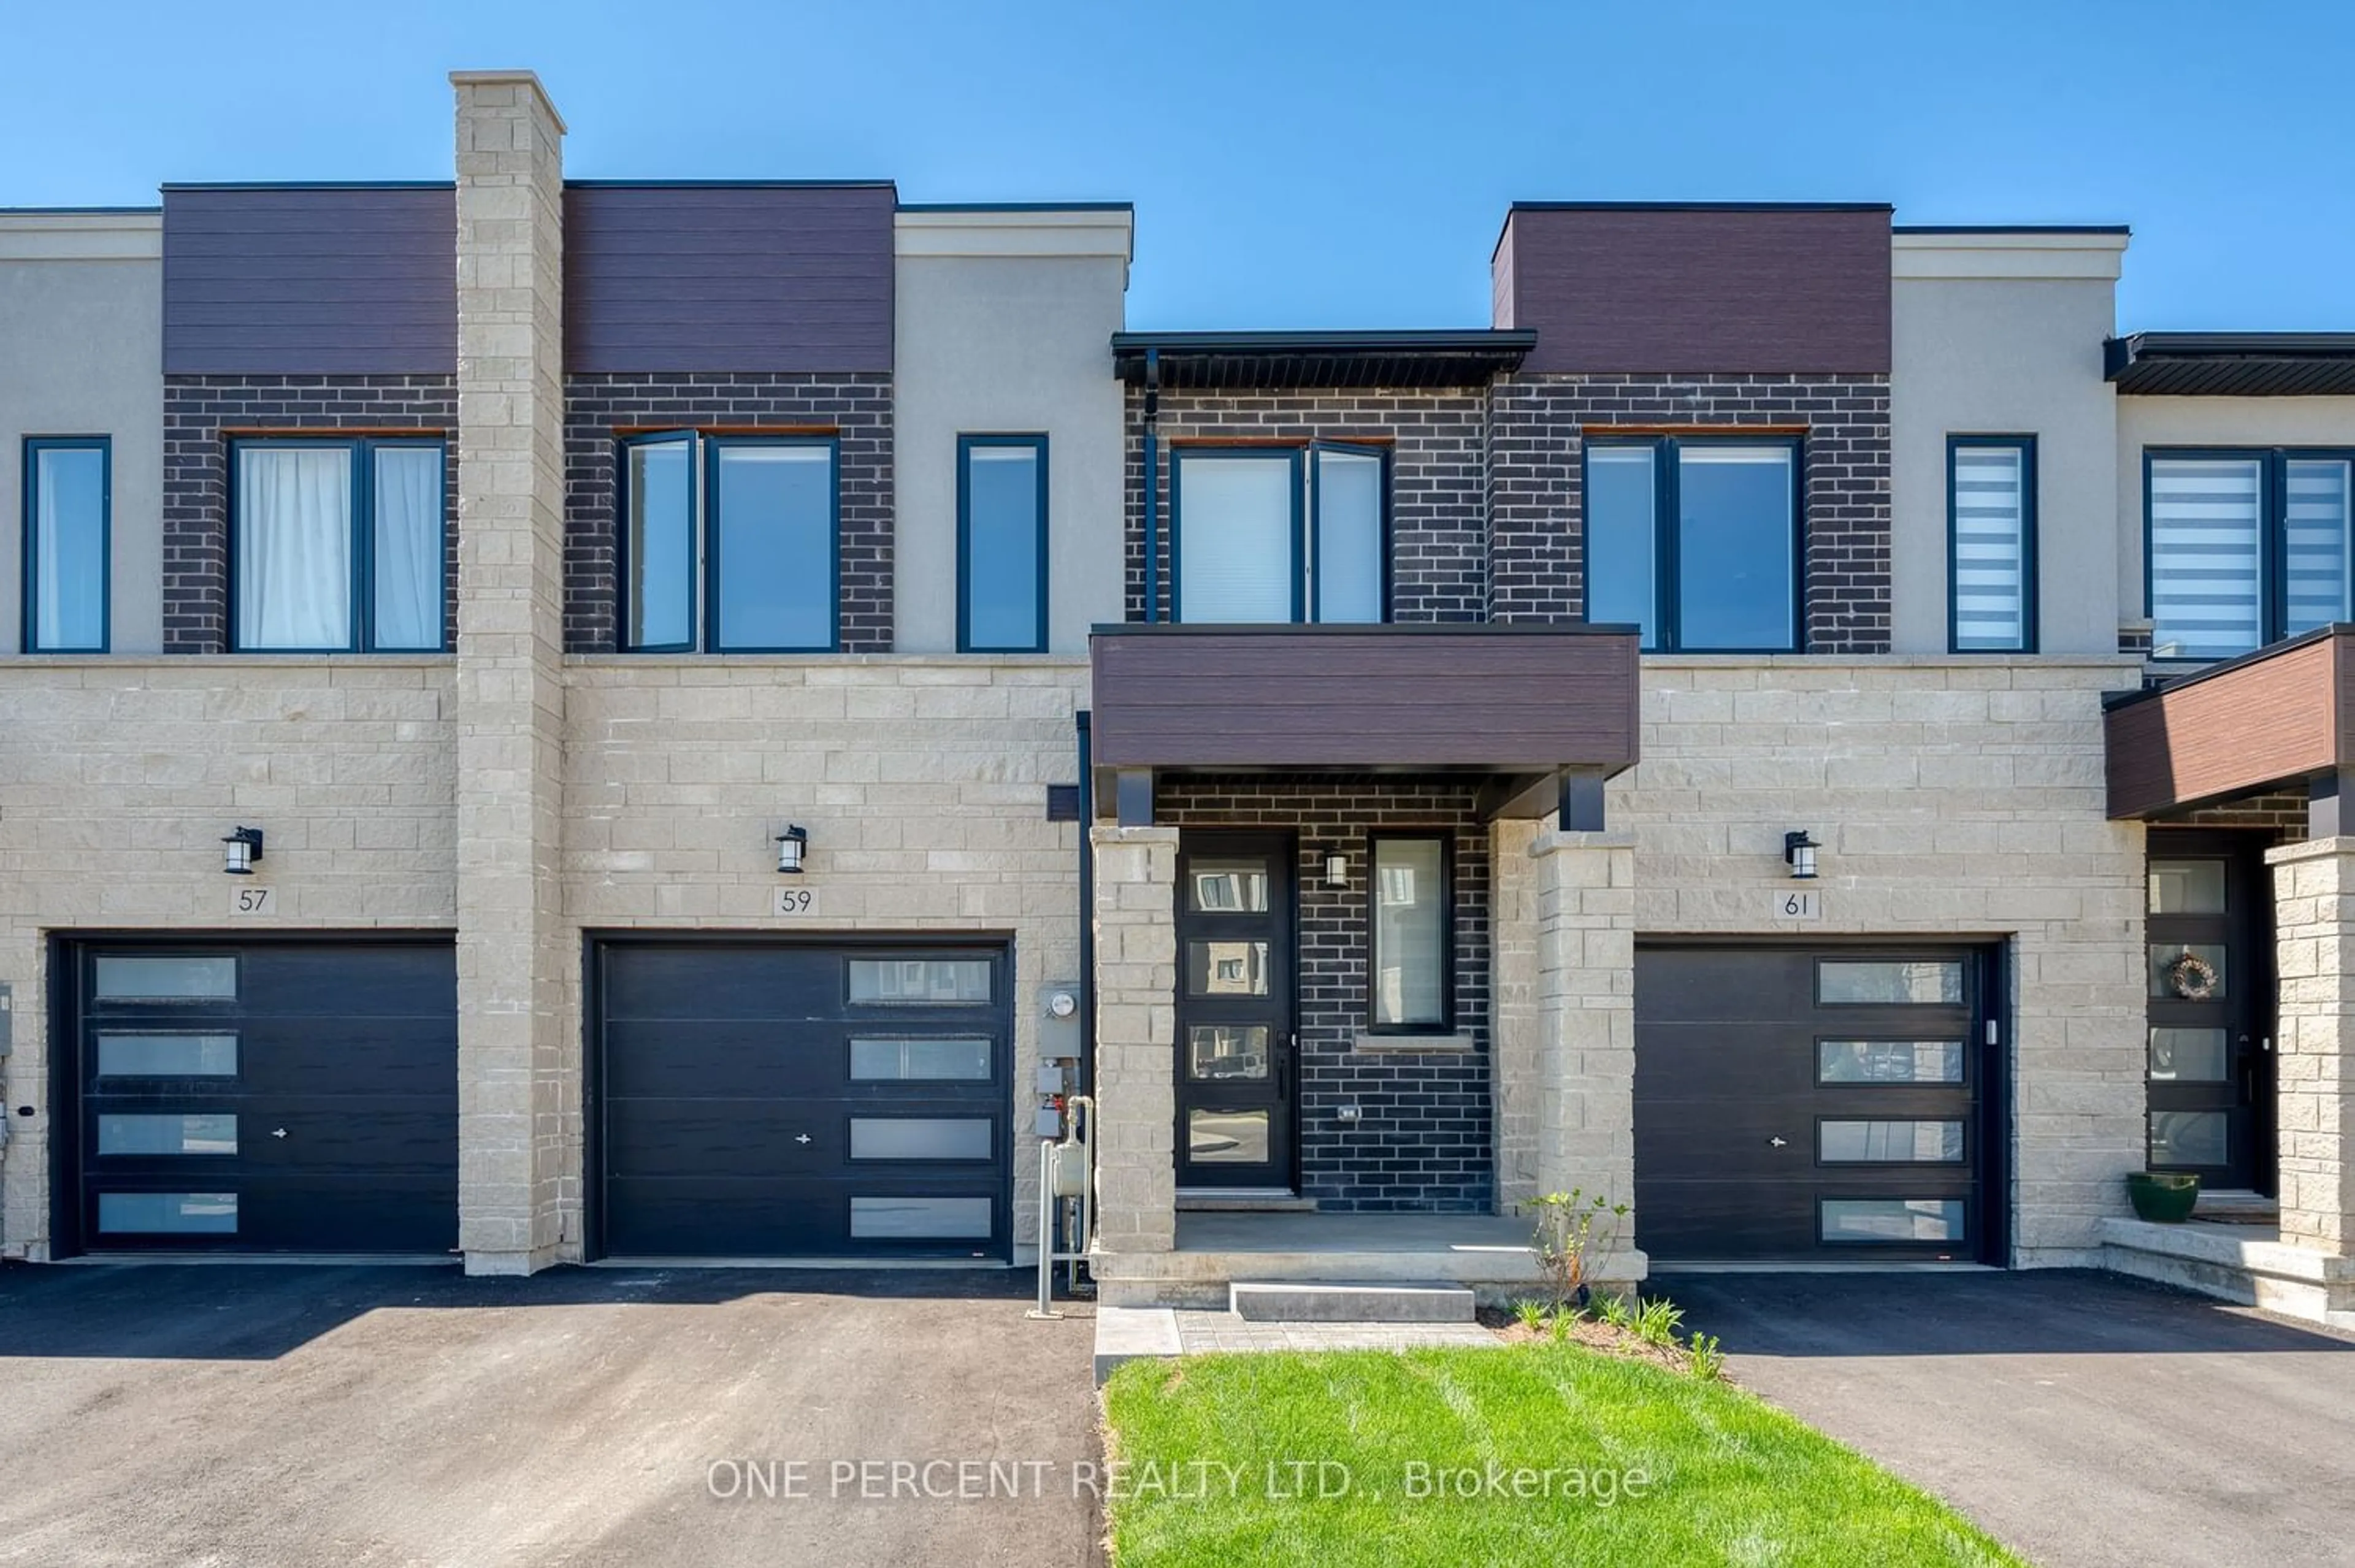 Home with brick exterior material for 59 Southam Lane, Hamilton Ontario L9C 0E7